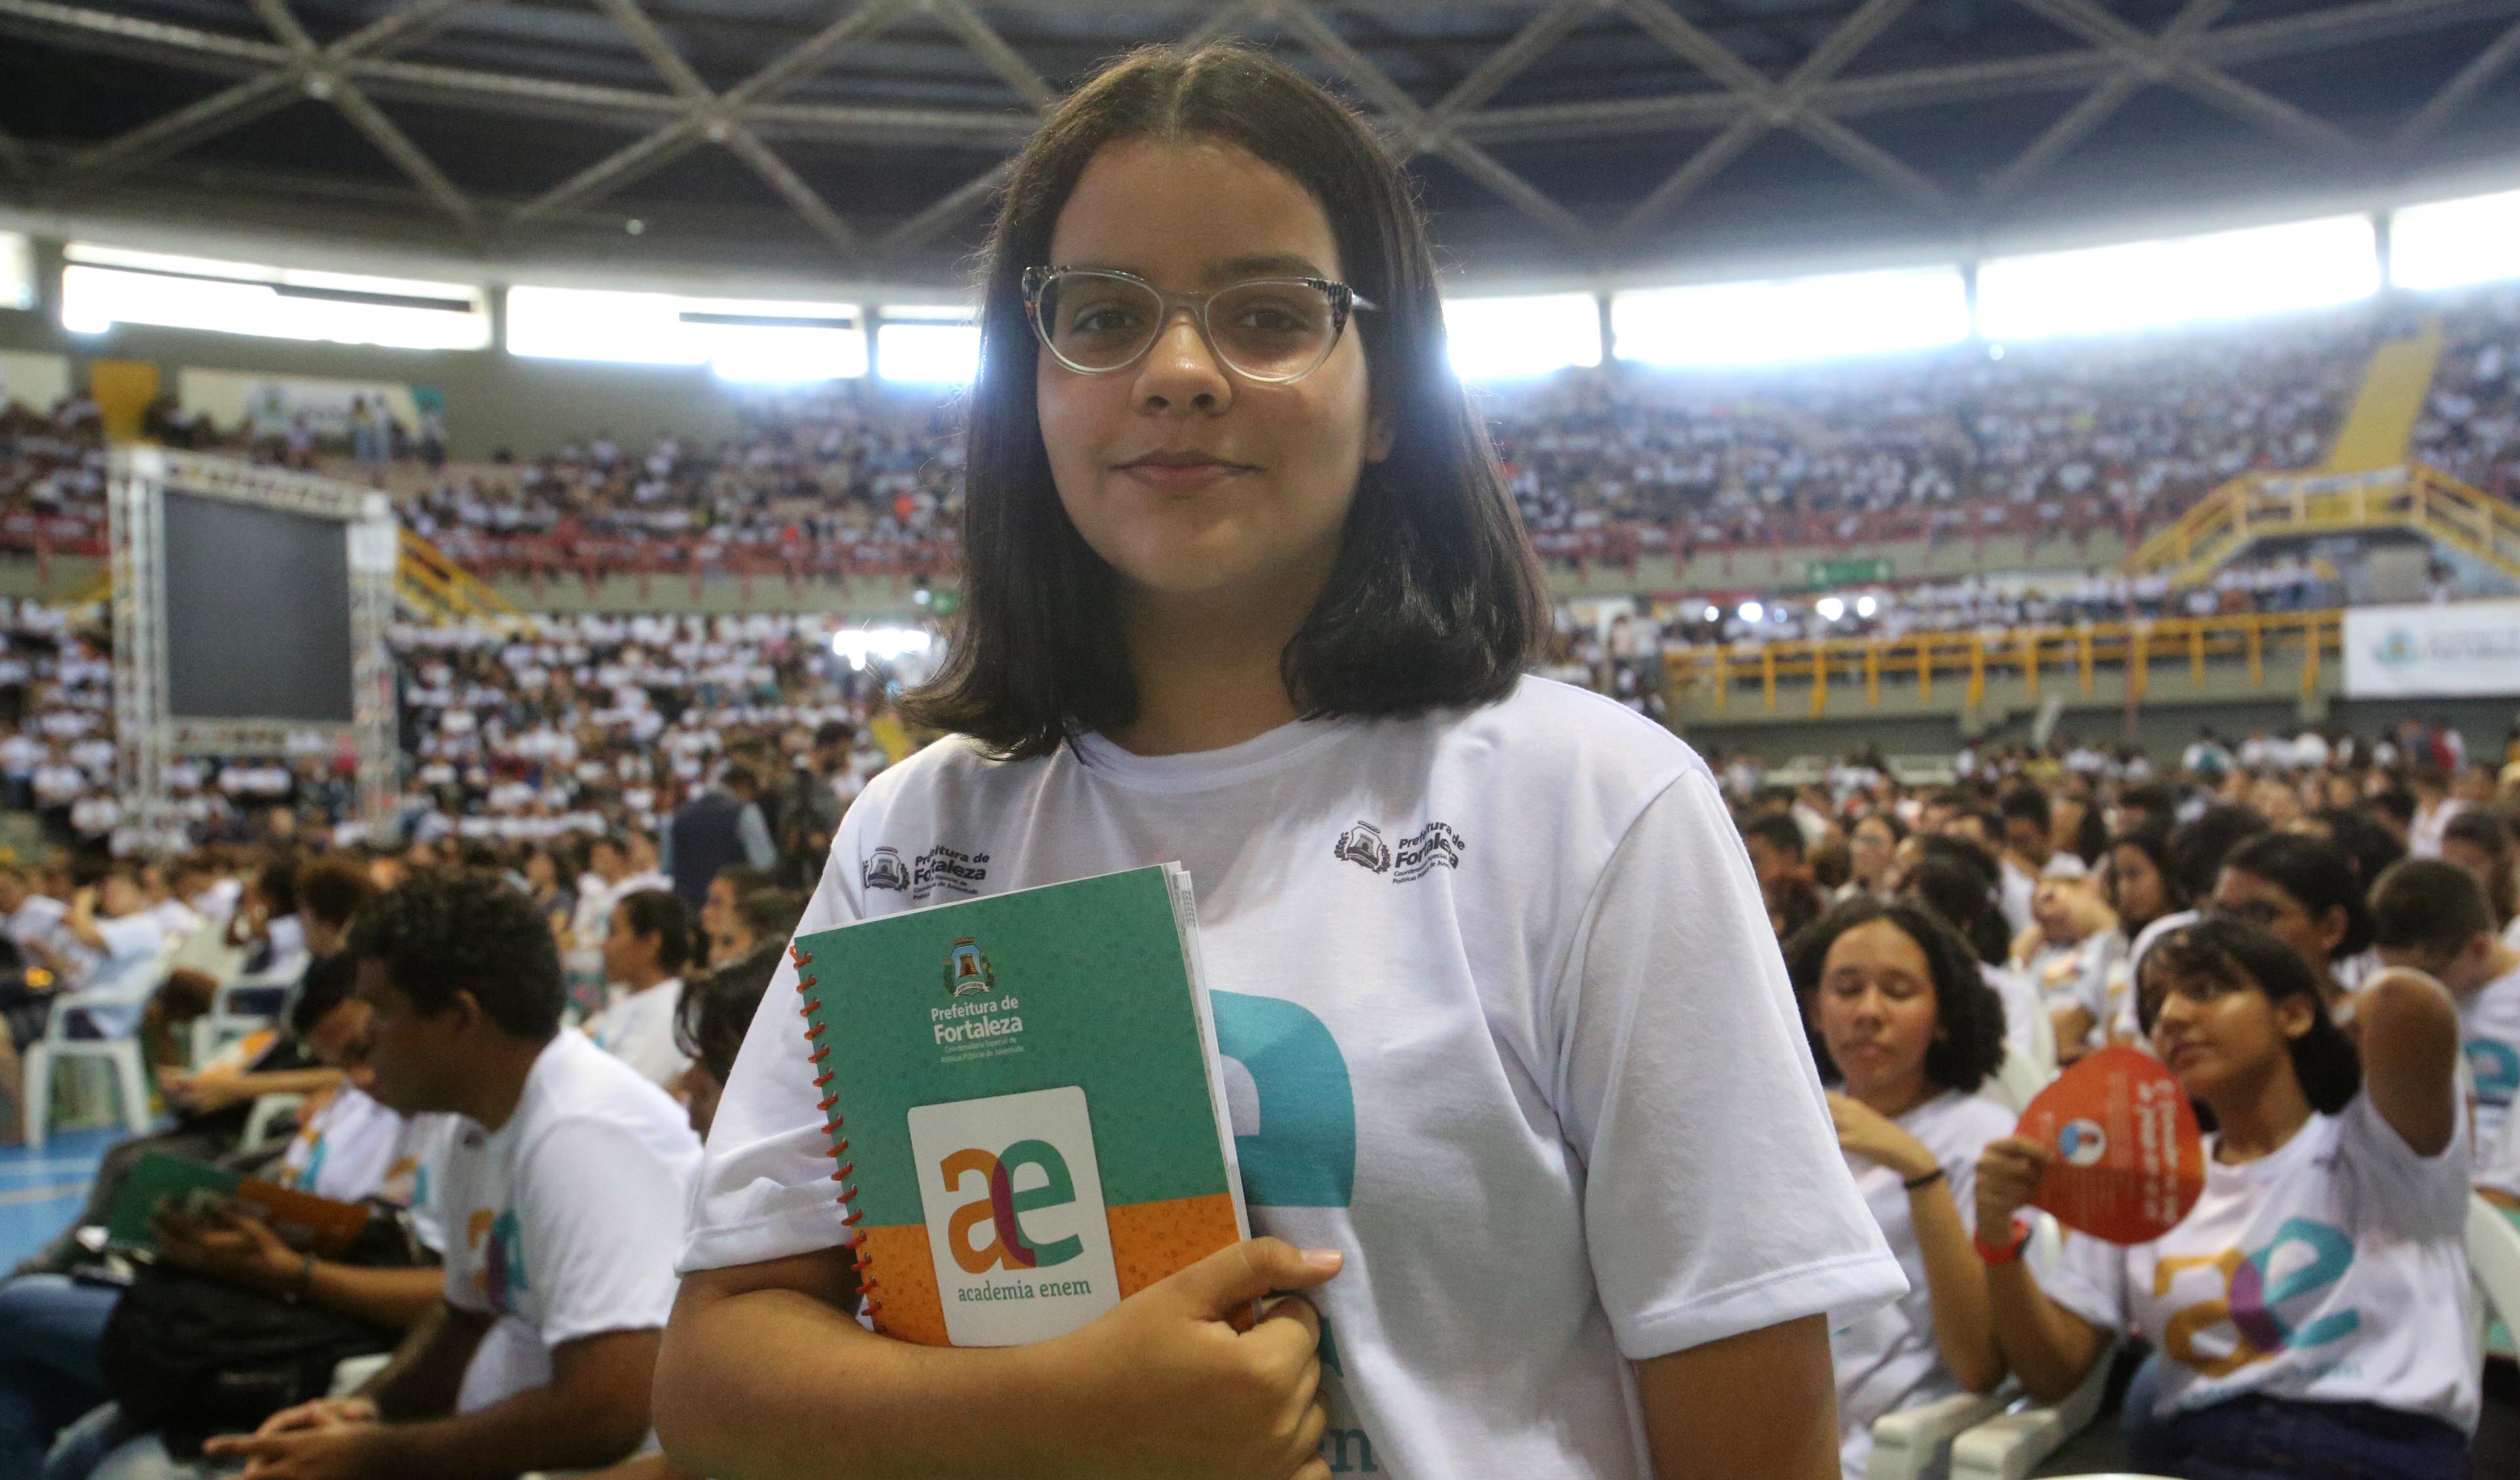 garota adolescente posando para a foto usando camiseta da Academia Enem e várias pessoas ao fundo no ginásio Paulo Sarasate